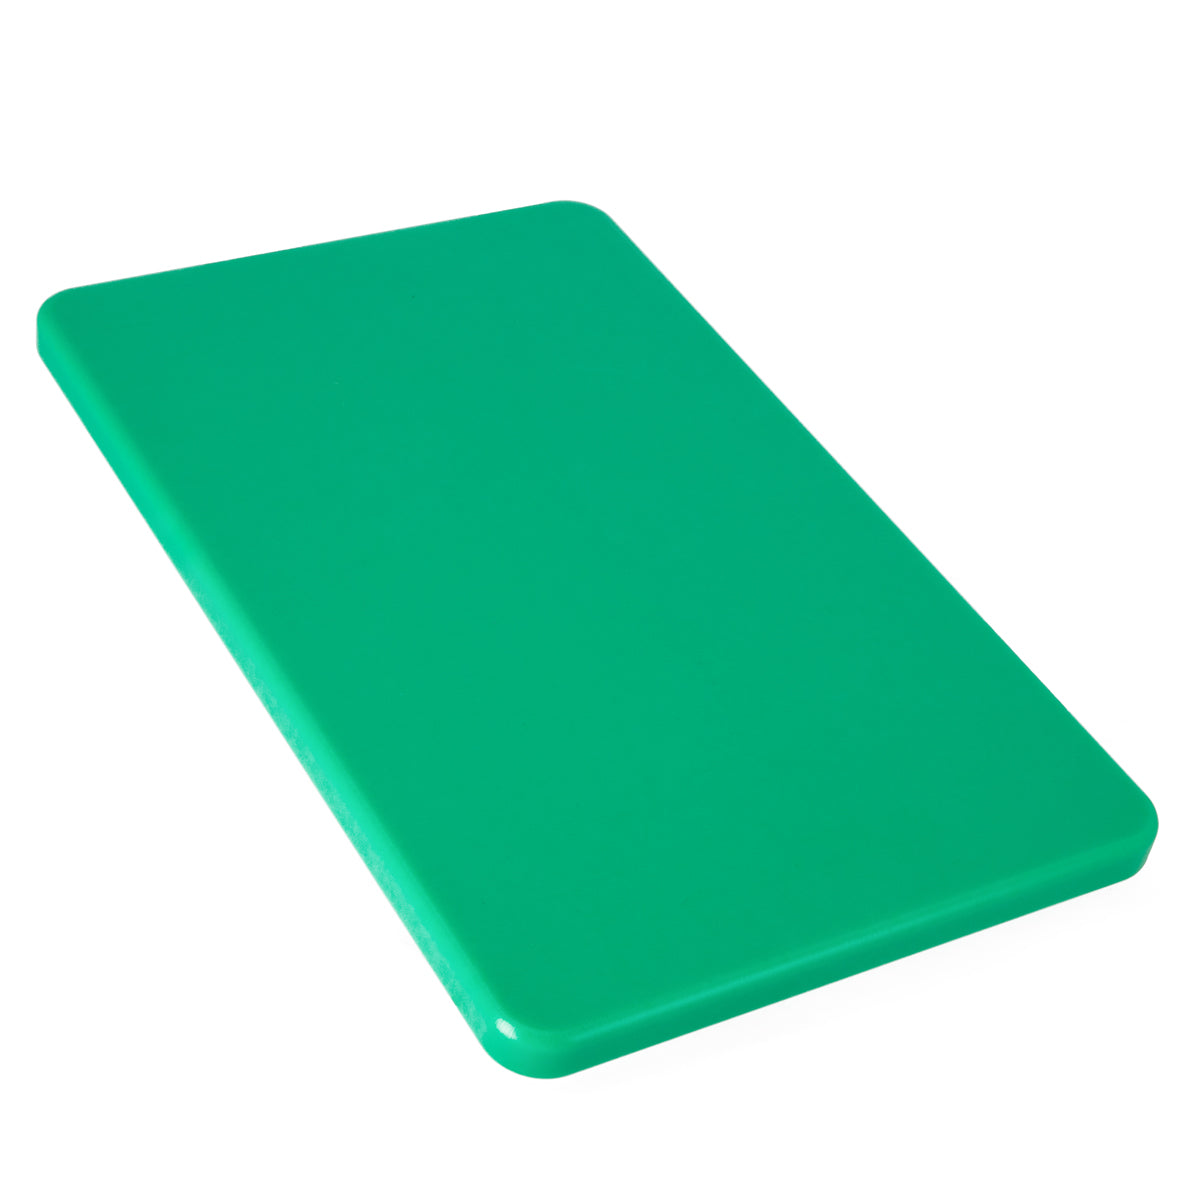 Skjærebrett - 53 x 32,5 cm - Grønn